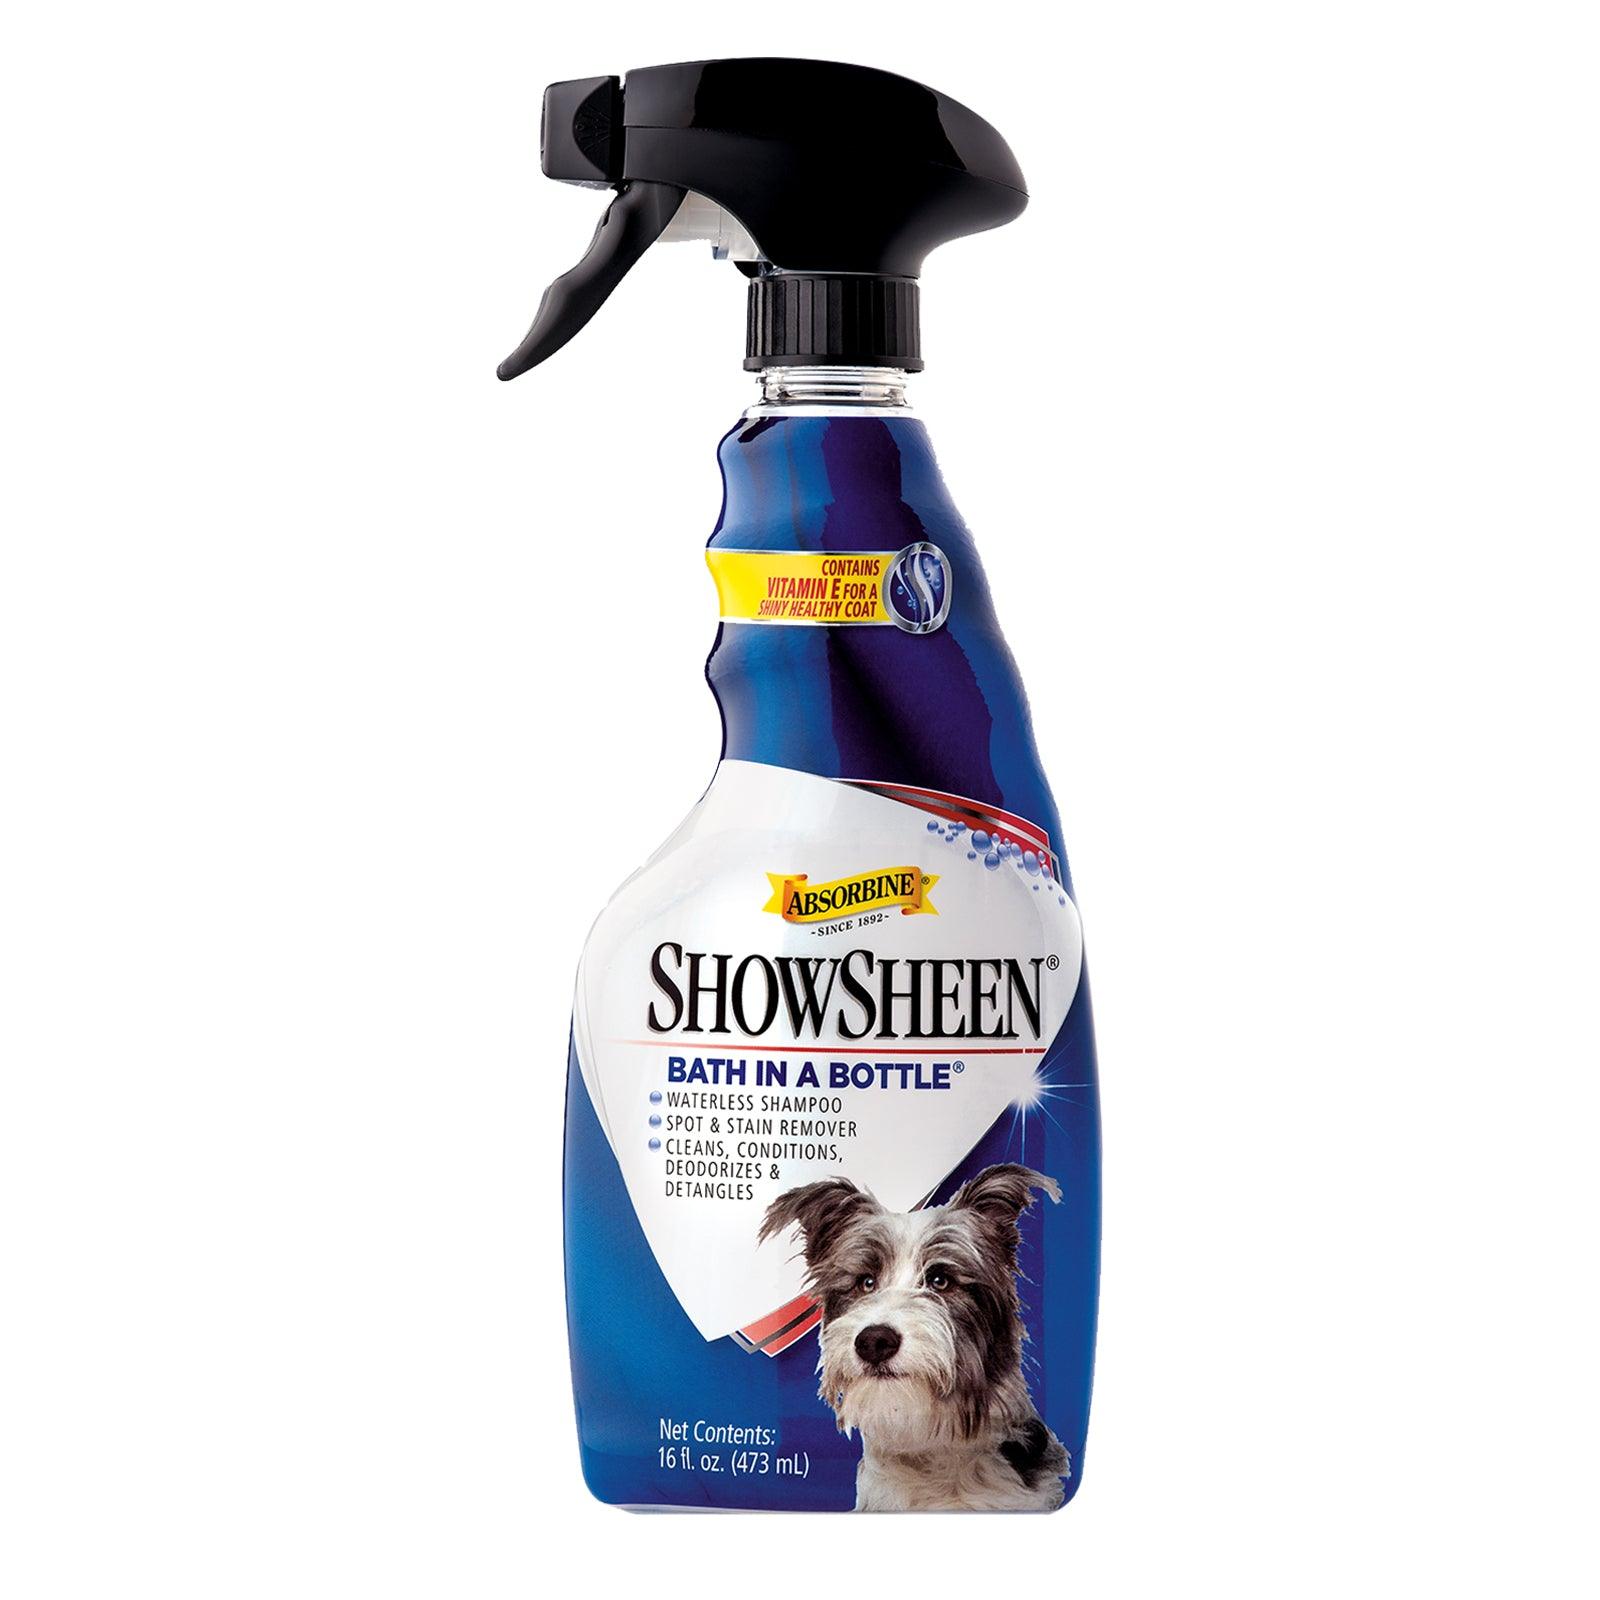 ShowSheen® Bath in a Bottle® Skin & Coat Care absorbine   